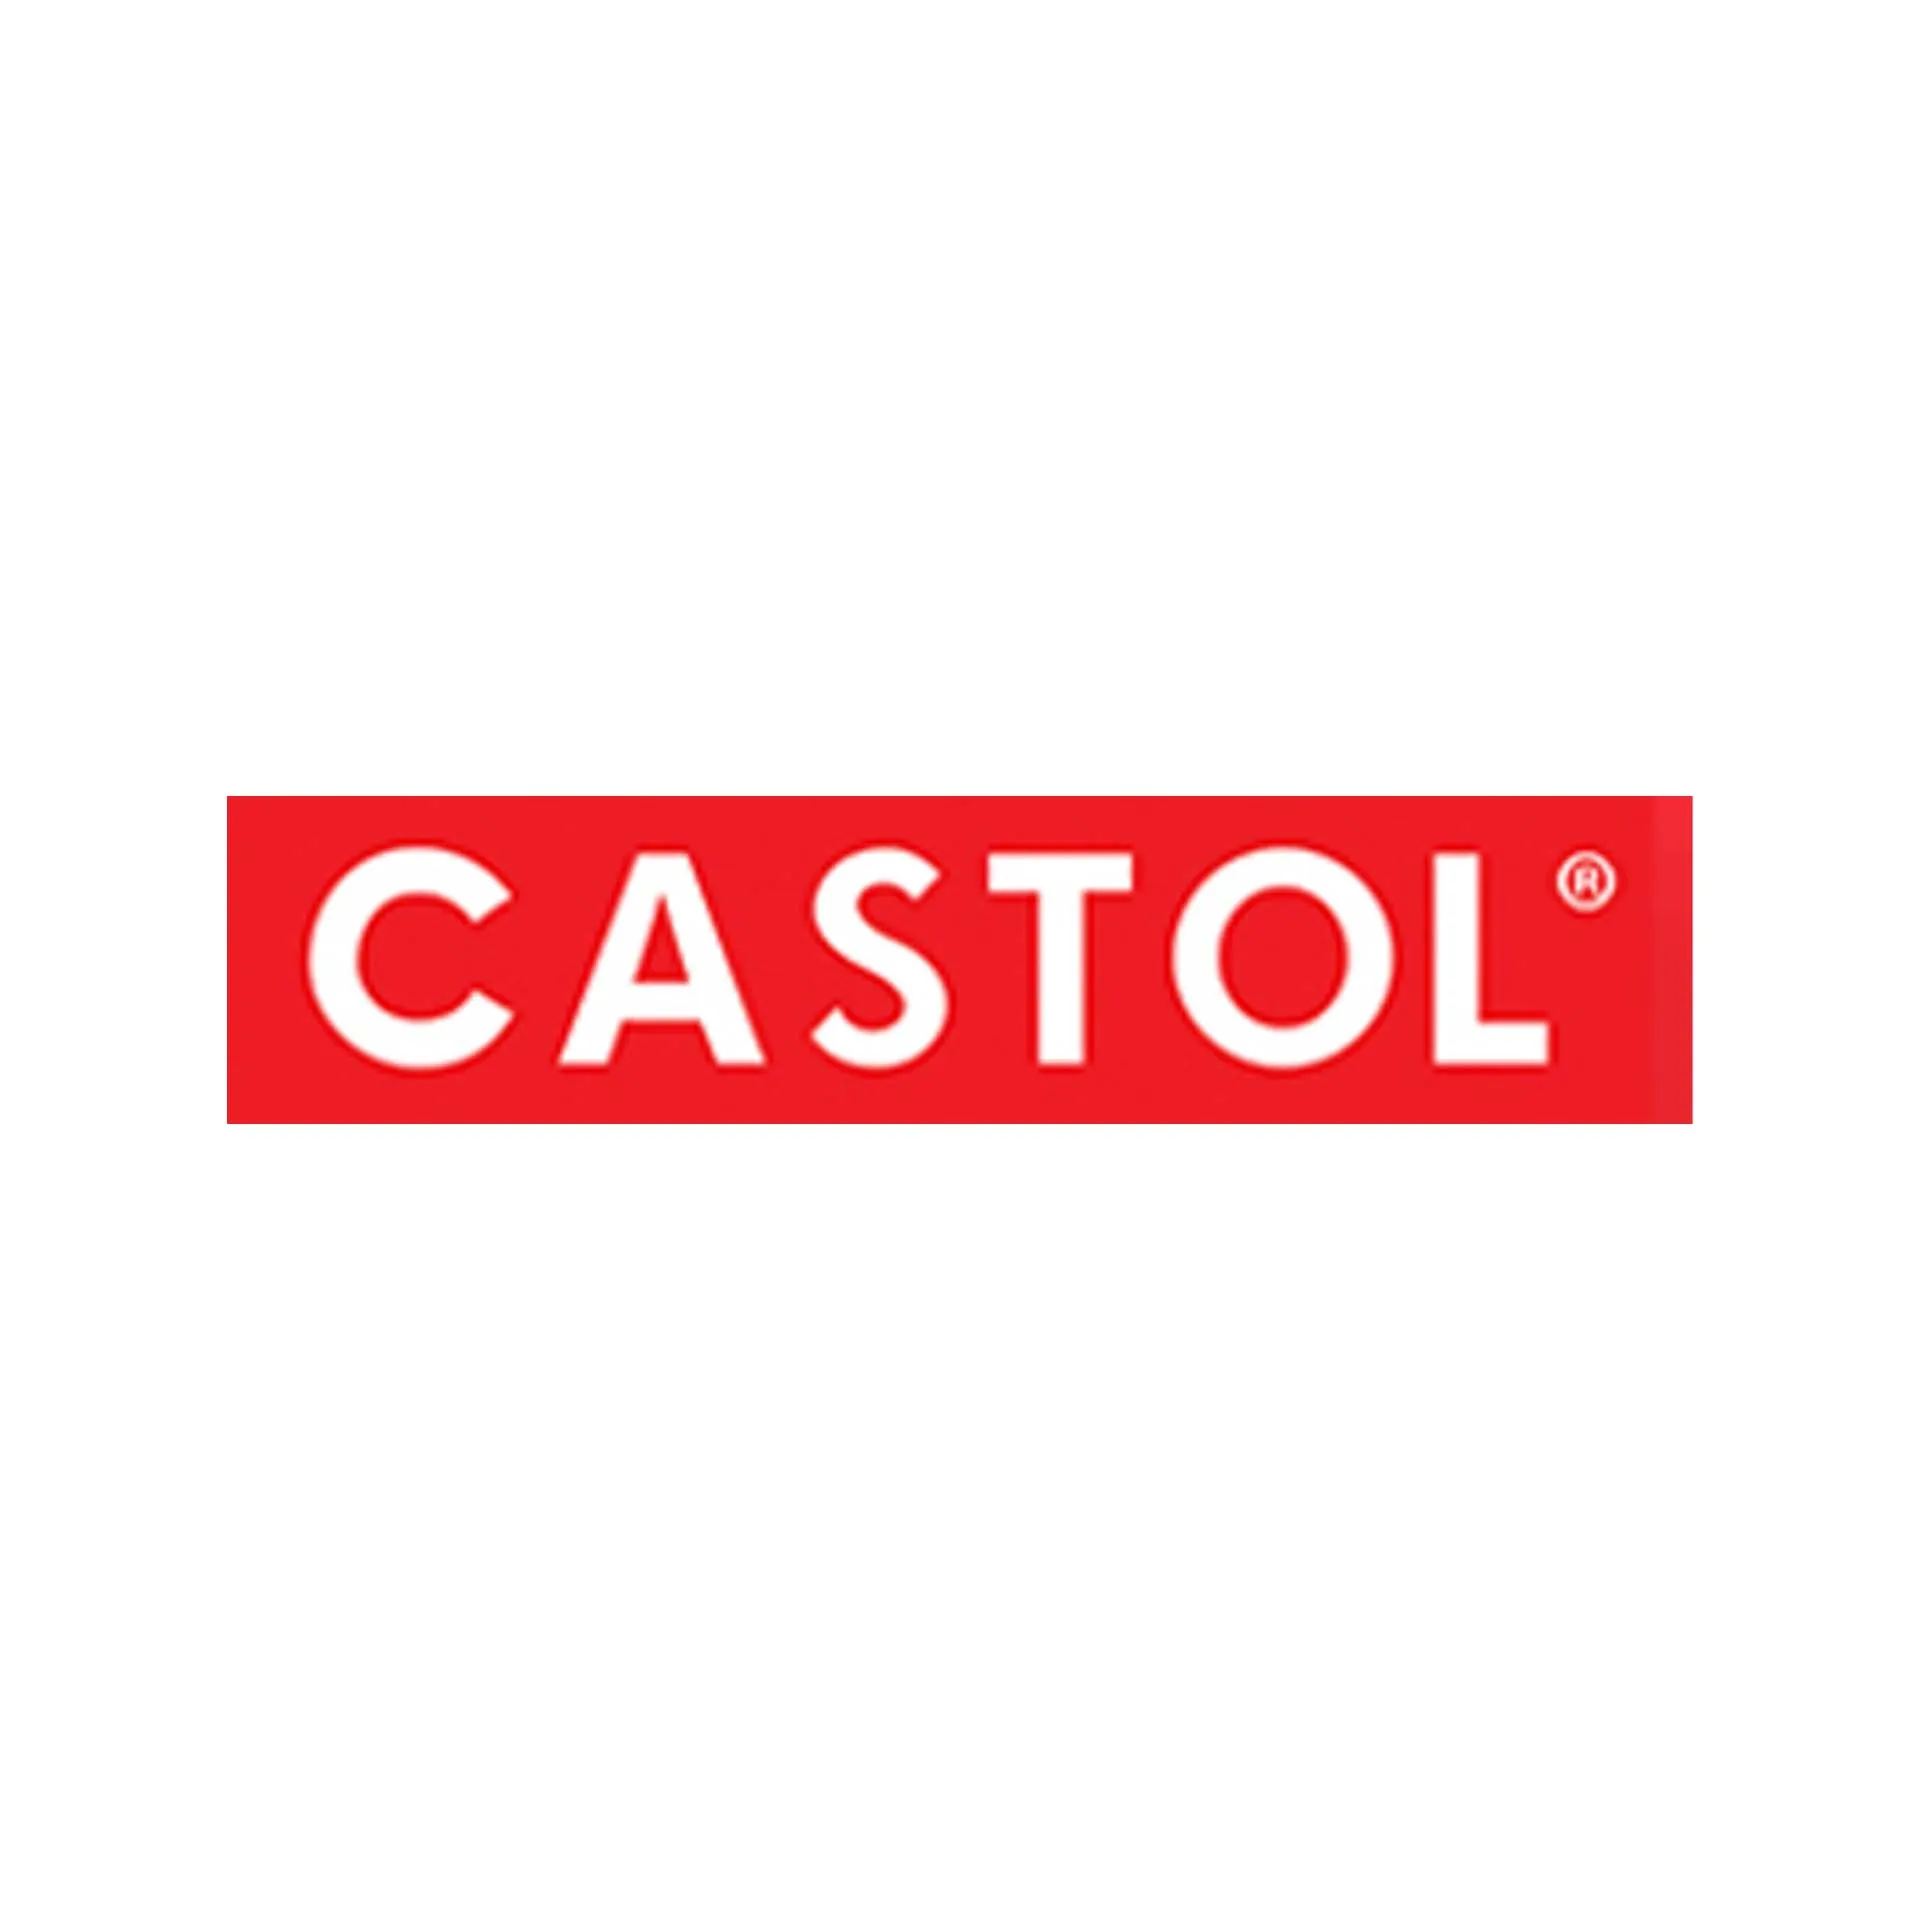 Castol